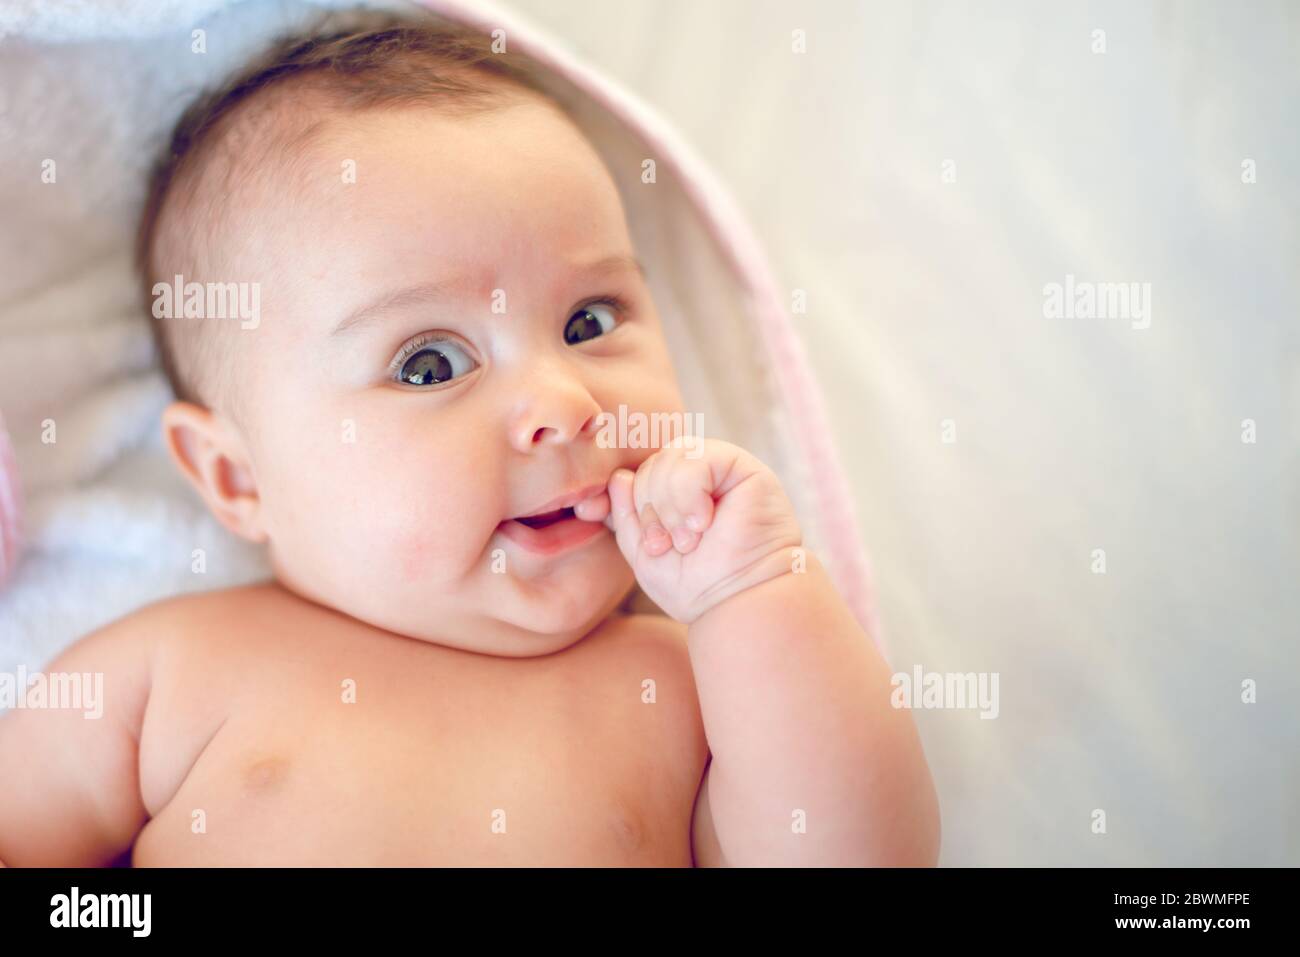 Porträt eines kleinen neugeborenen Mädchens, das ihren Finger im Mund hat Stockfoto